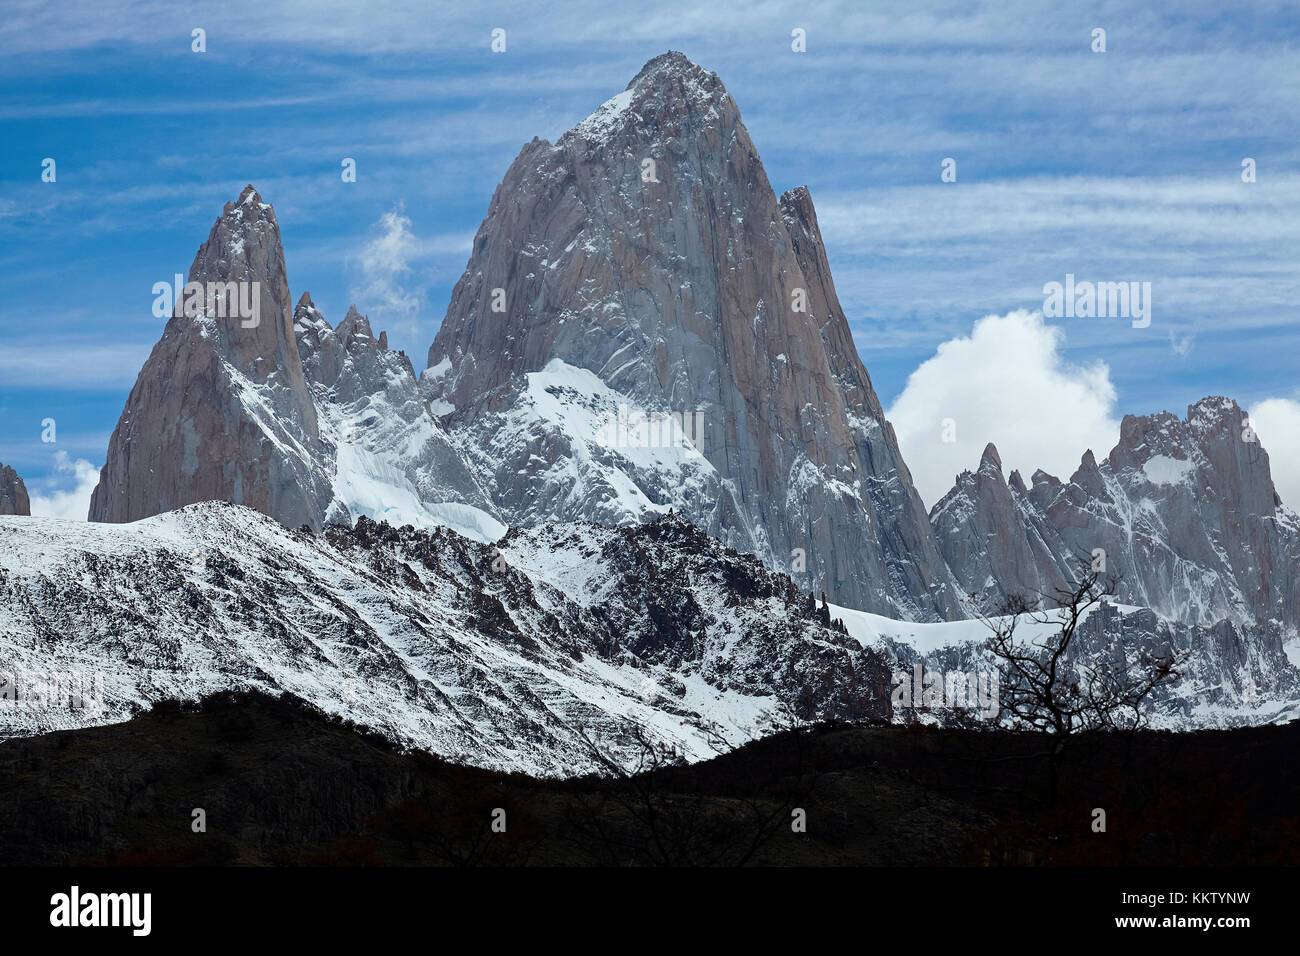 Mount Fitz Roy, Parque Nacional Los Glaciares (Welterbegebiet), Patagonien, Argentinien, Südamerika Stockfoto